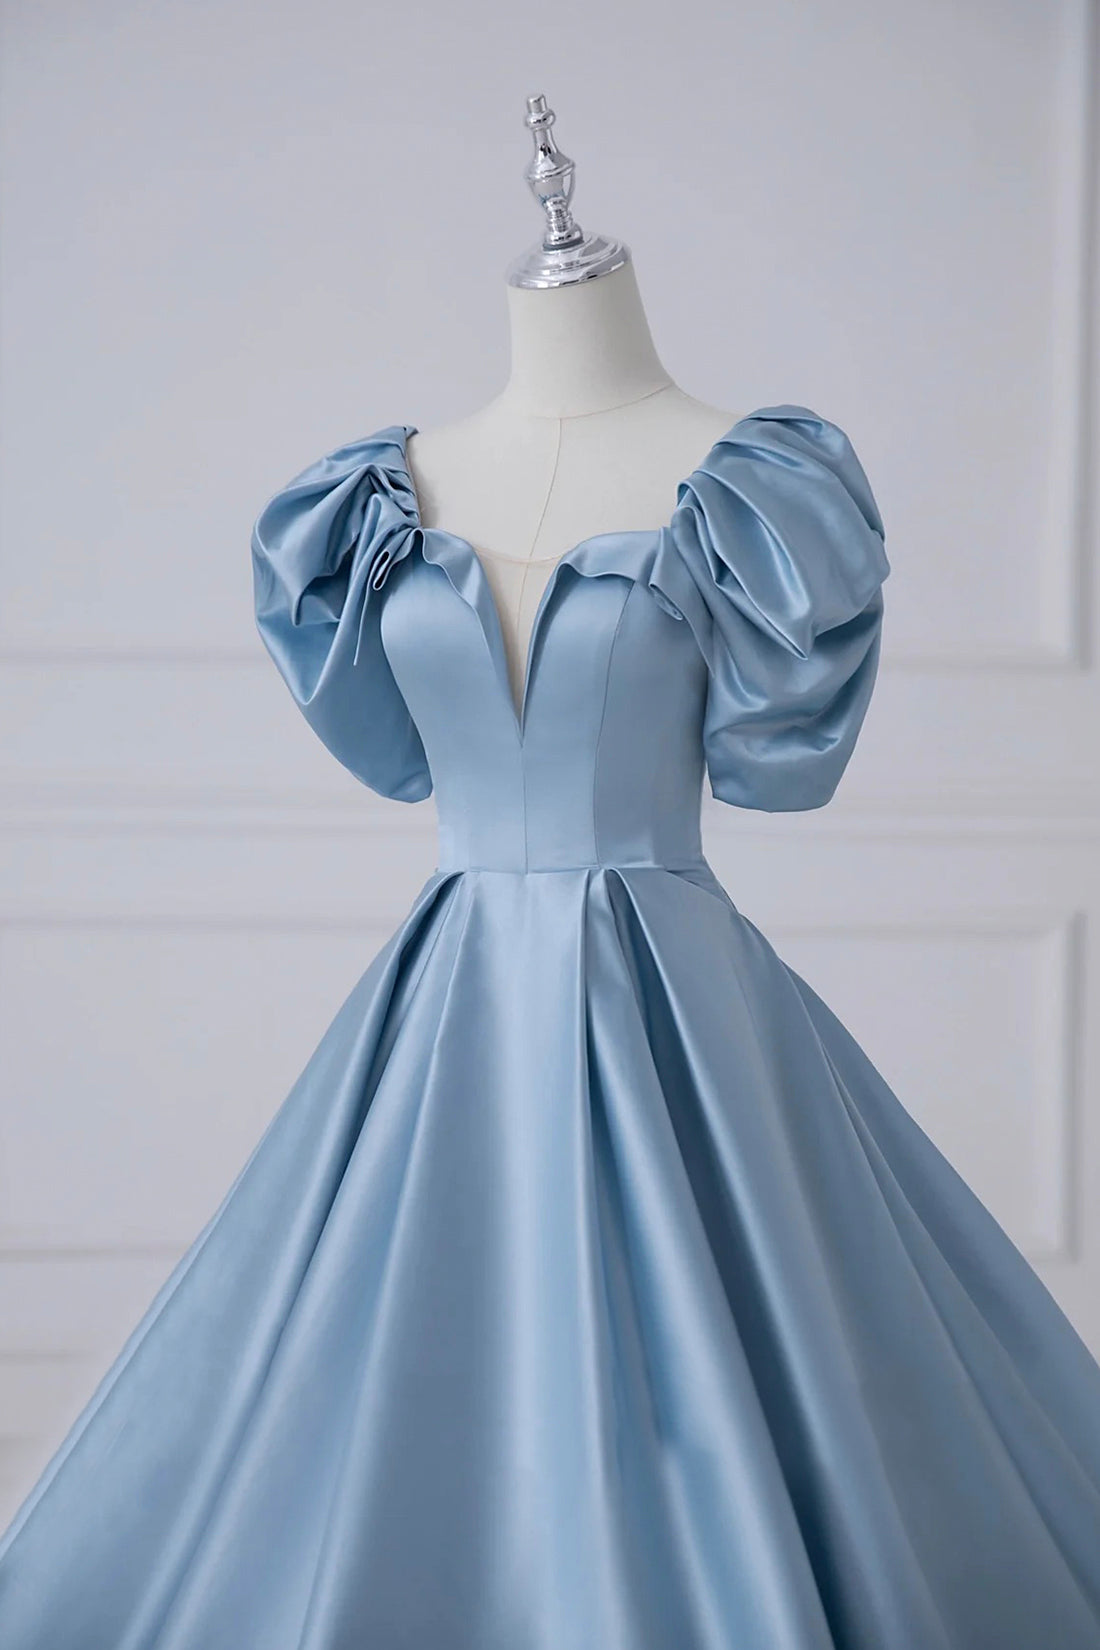 Blue Satin Long A-Line Prom Dress, Beautiful A-Line Short Sleeve Evening Dress